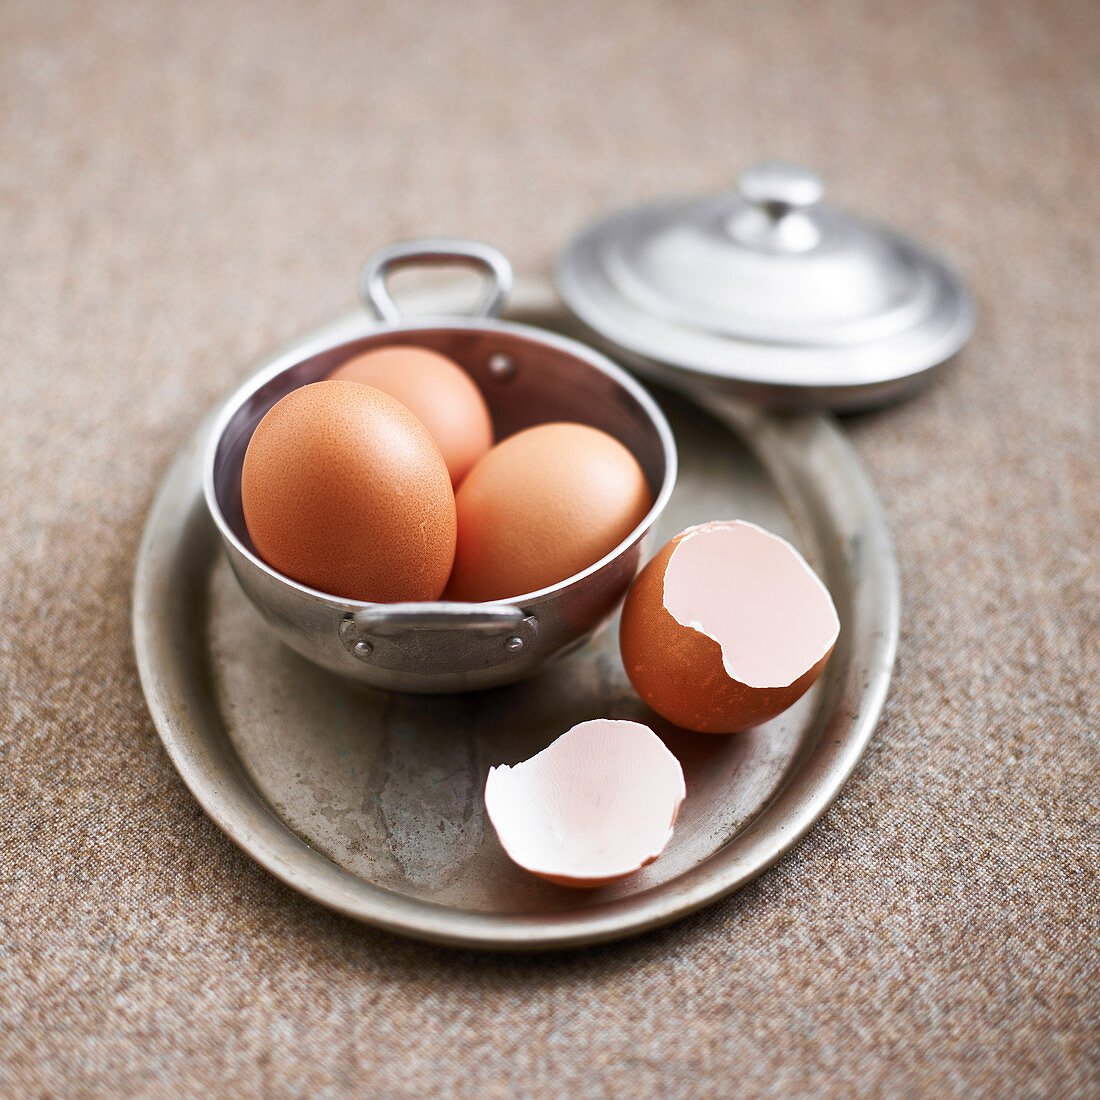 Eggs, whole and egg shells